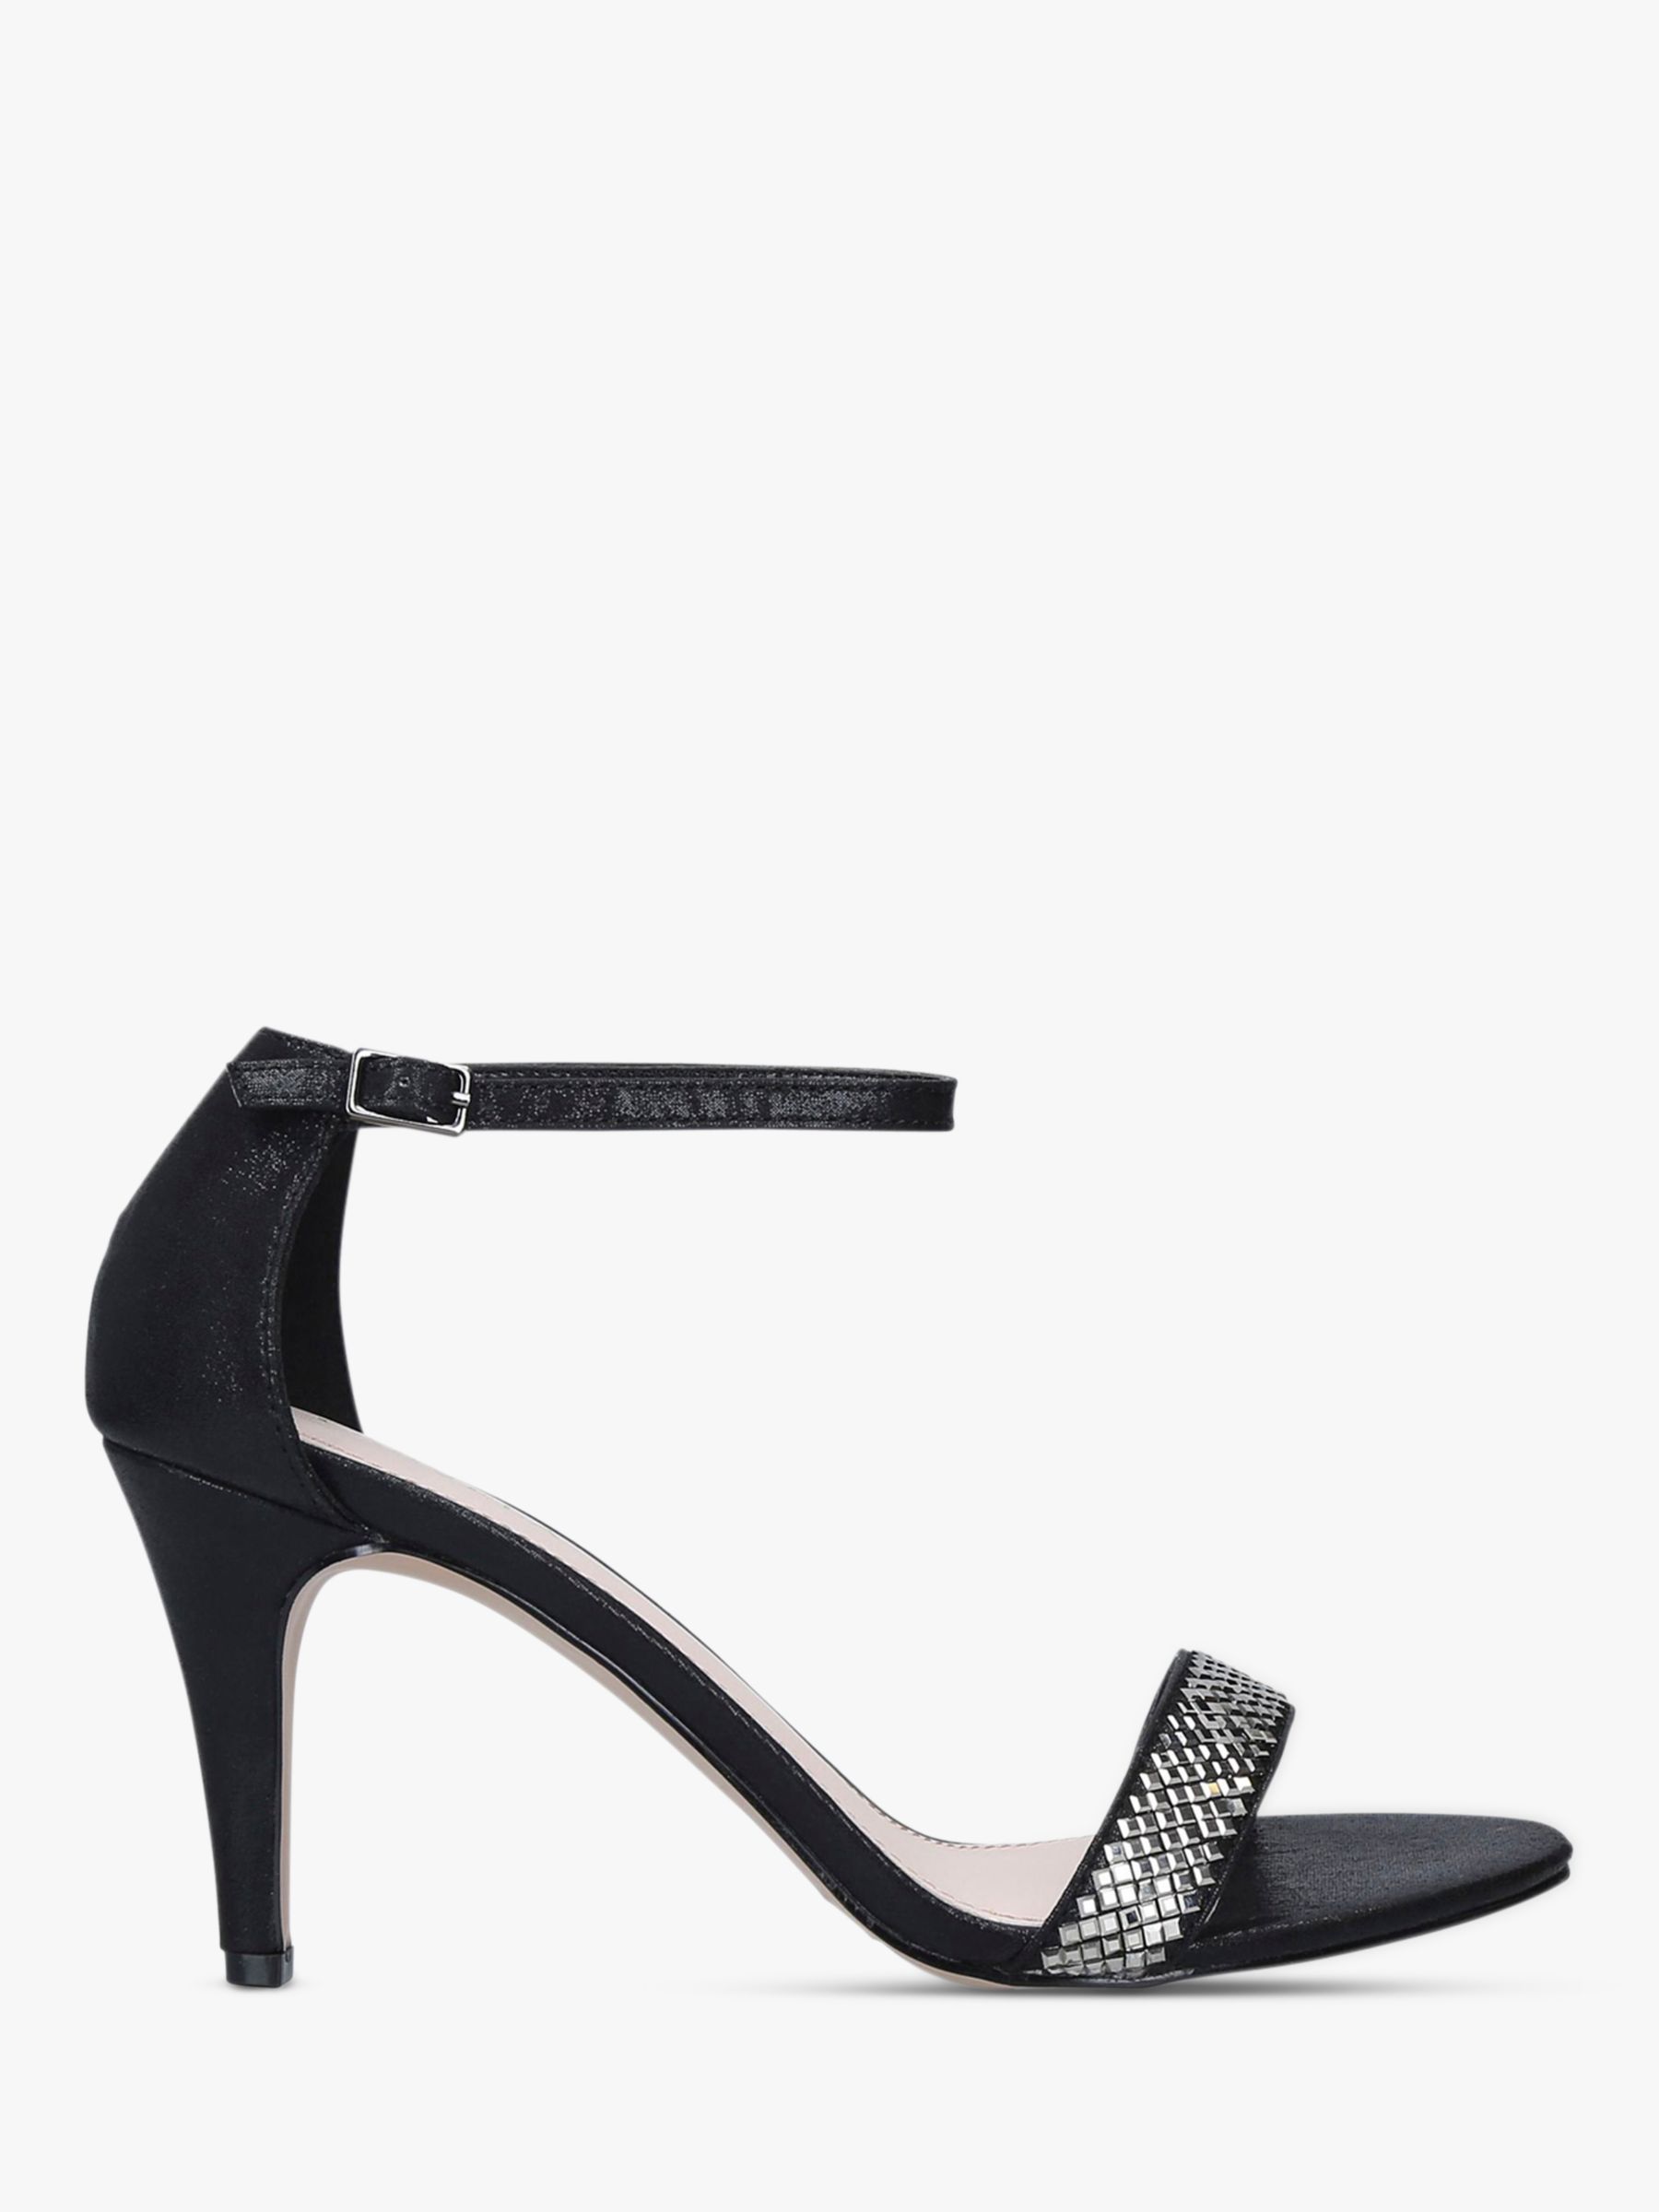 Carvela Kink Embellished Stiletto Heel Sandals, Black